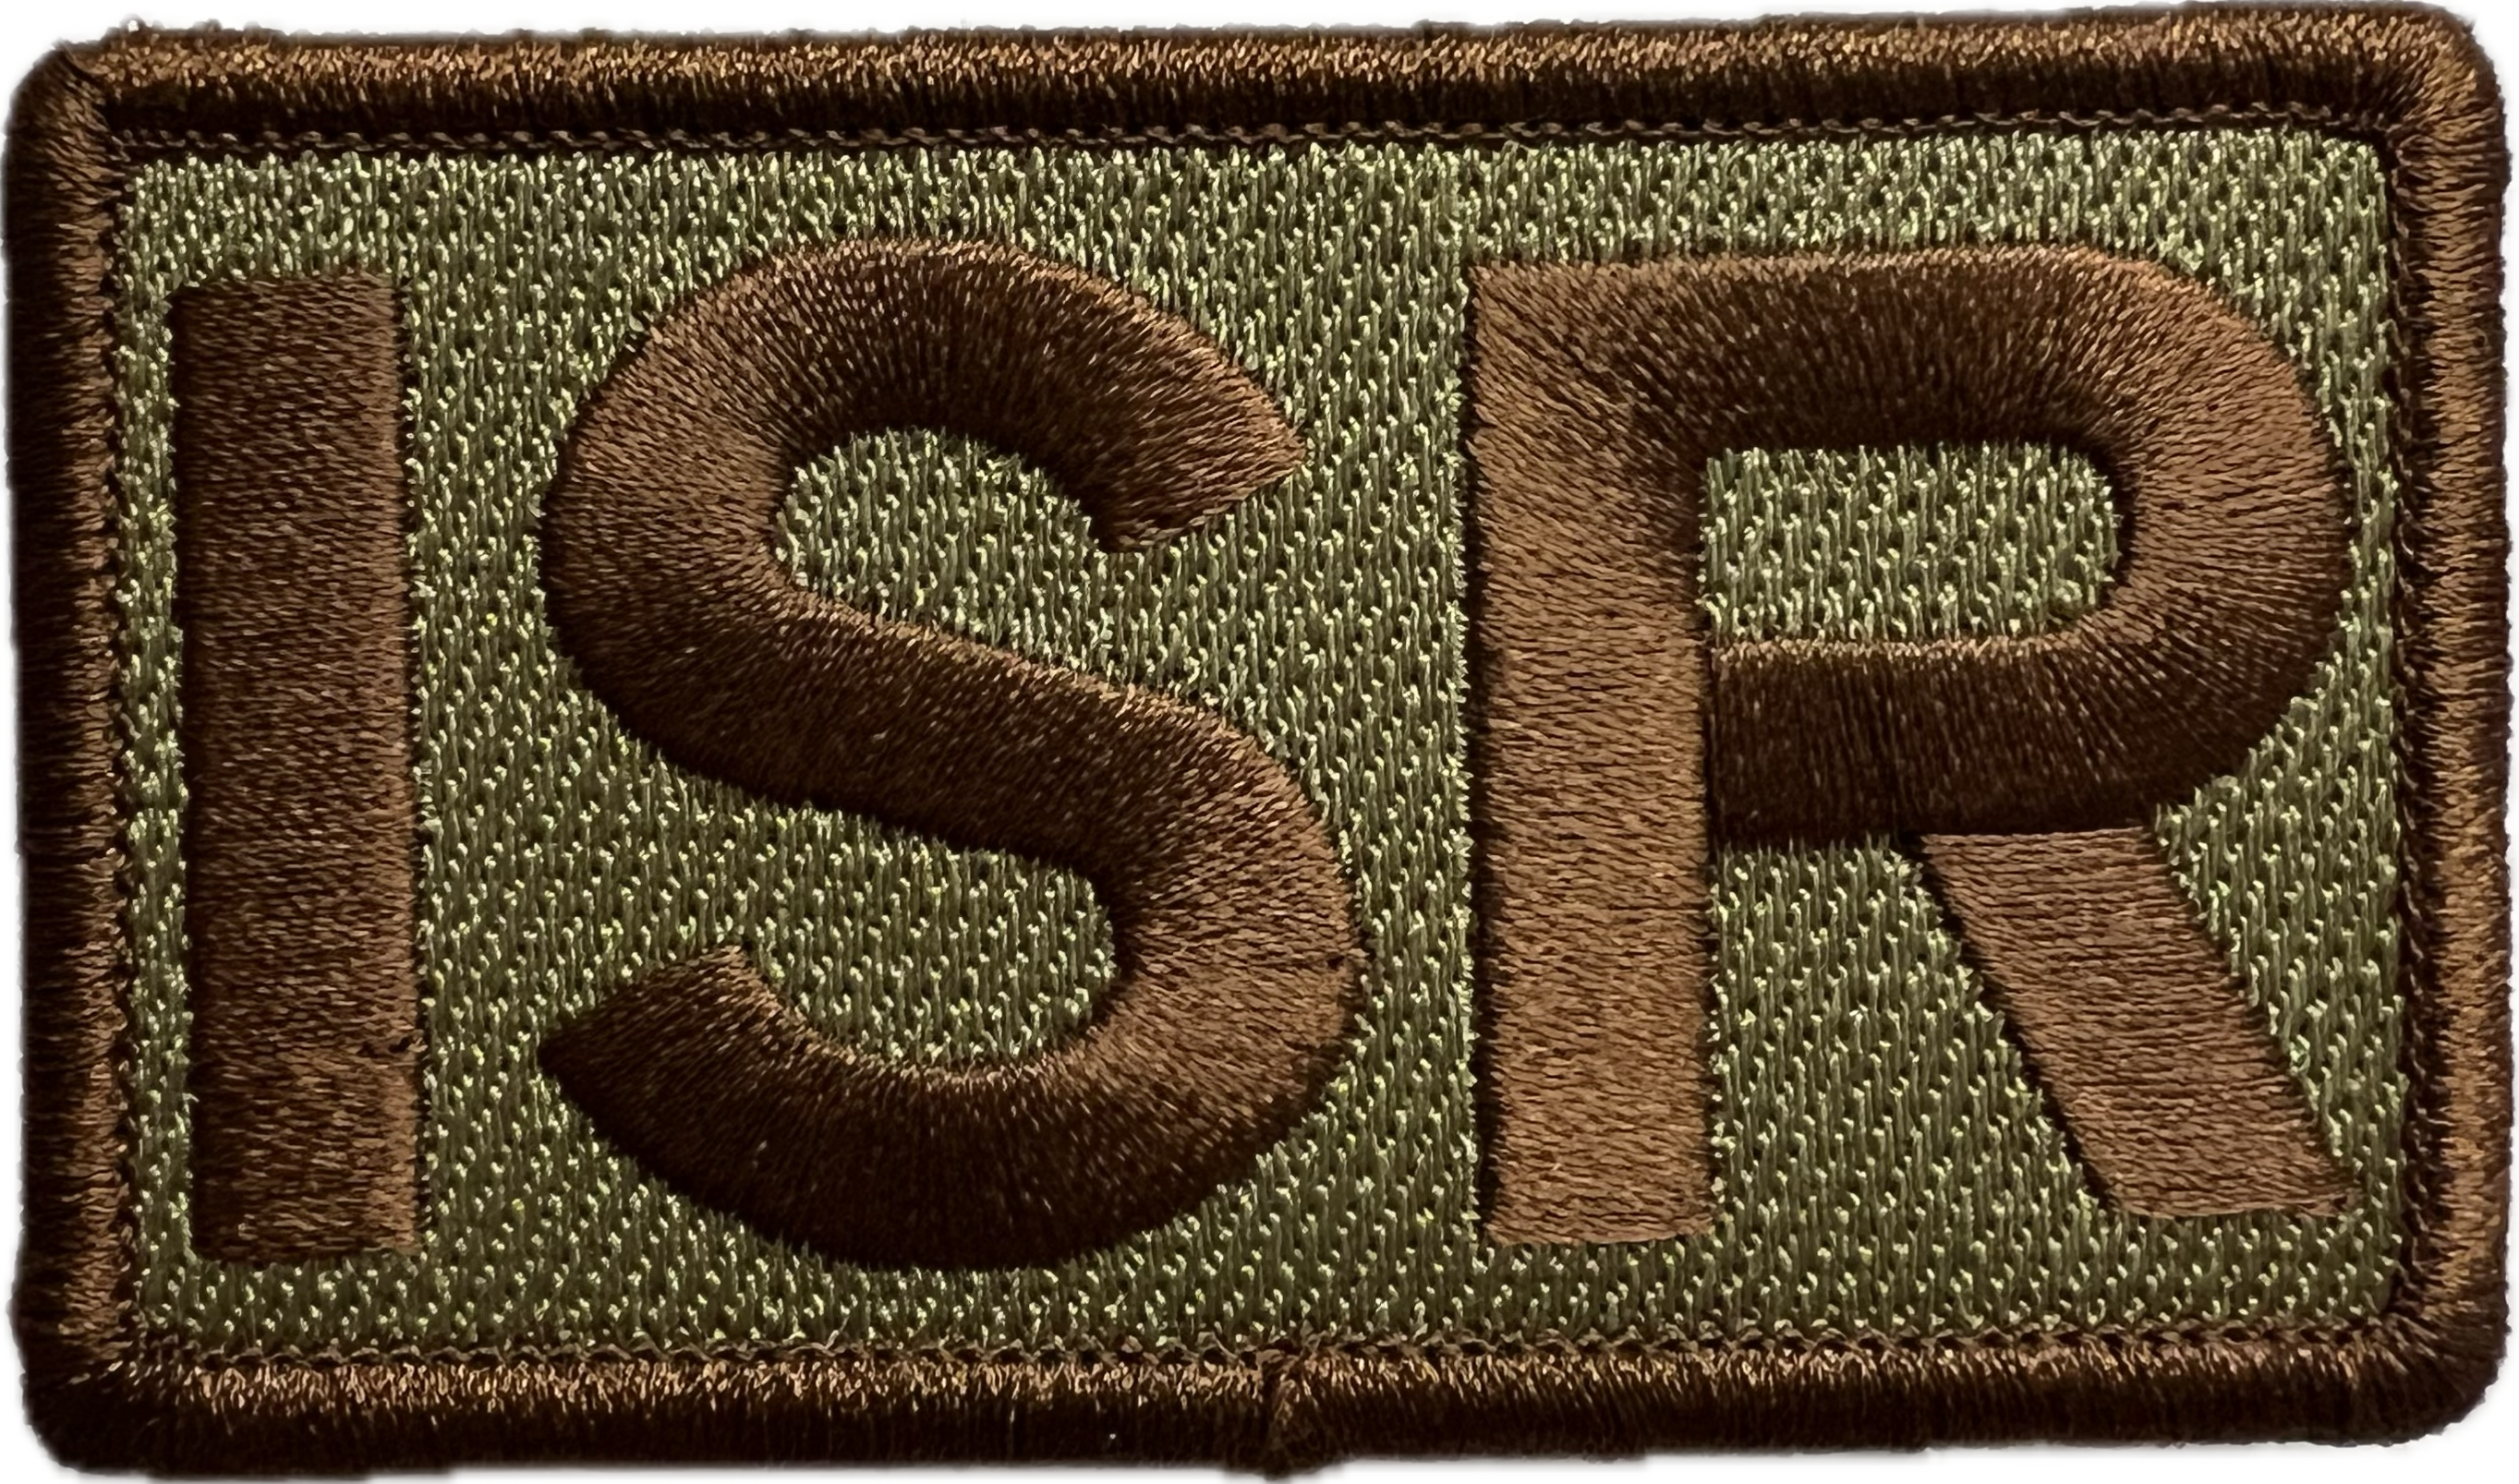 ISR - Duty Identifier Patch